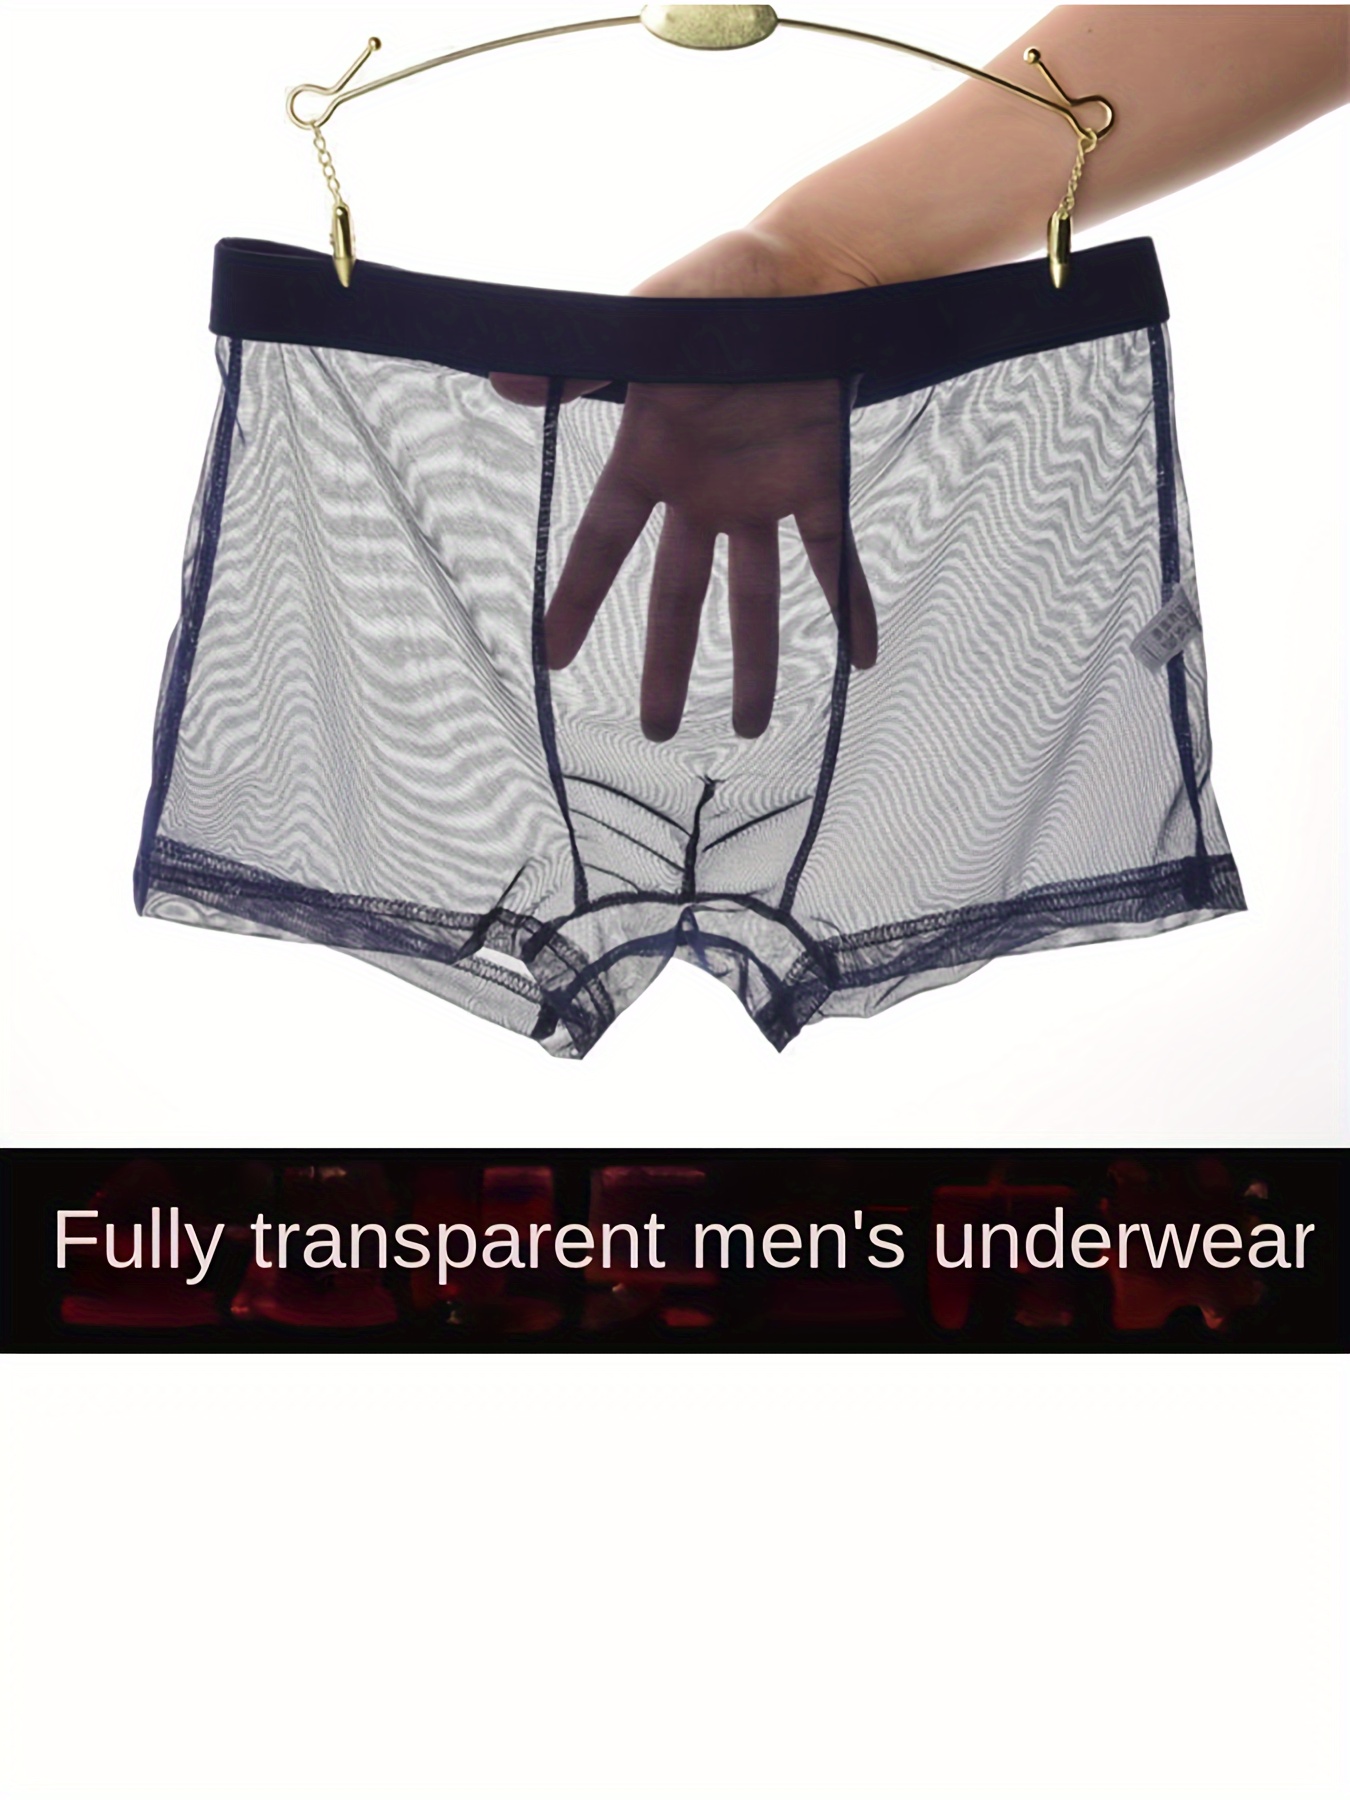 Herren Unterwäsche Badehose Transparente Netz Unterhosen Unterhose